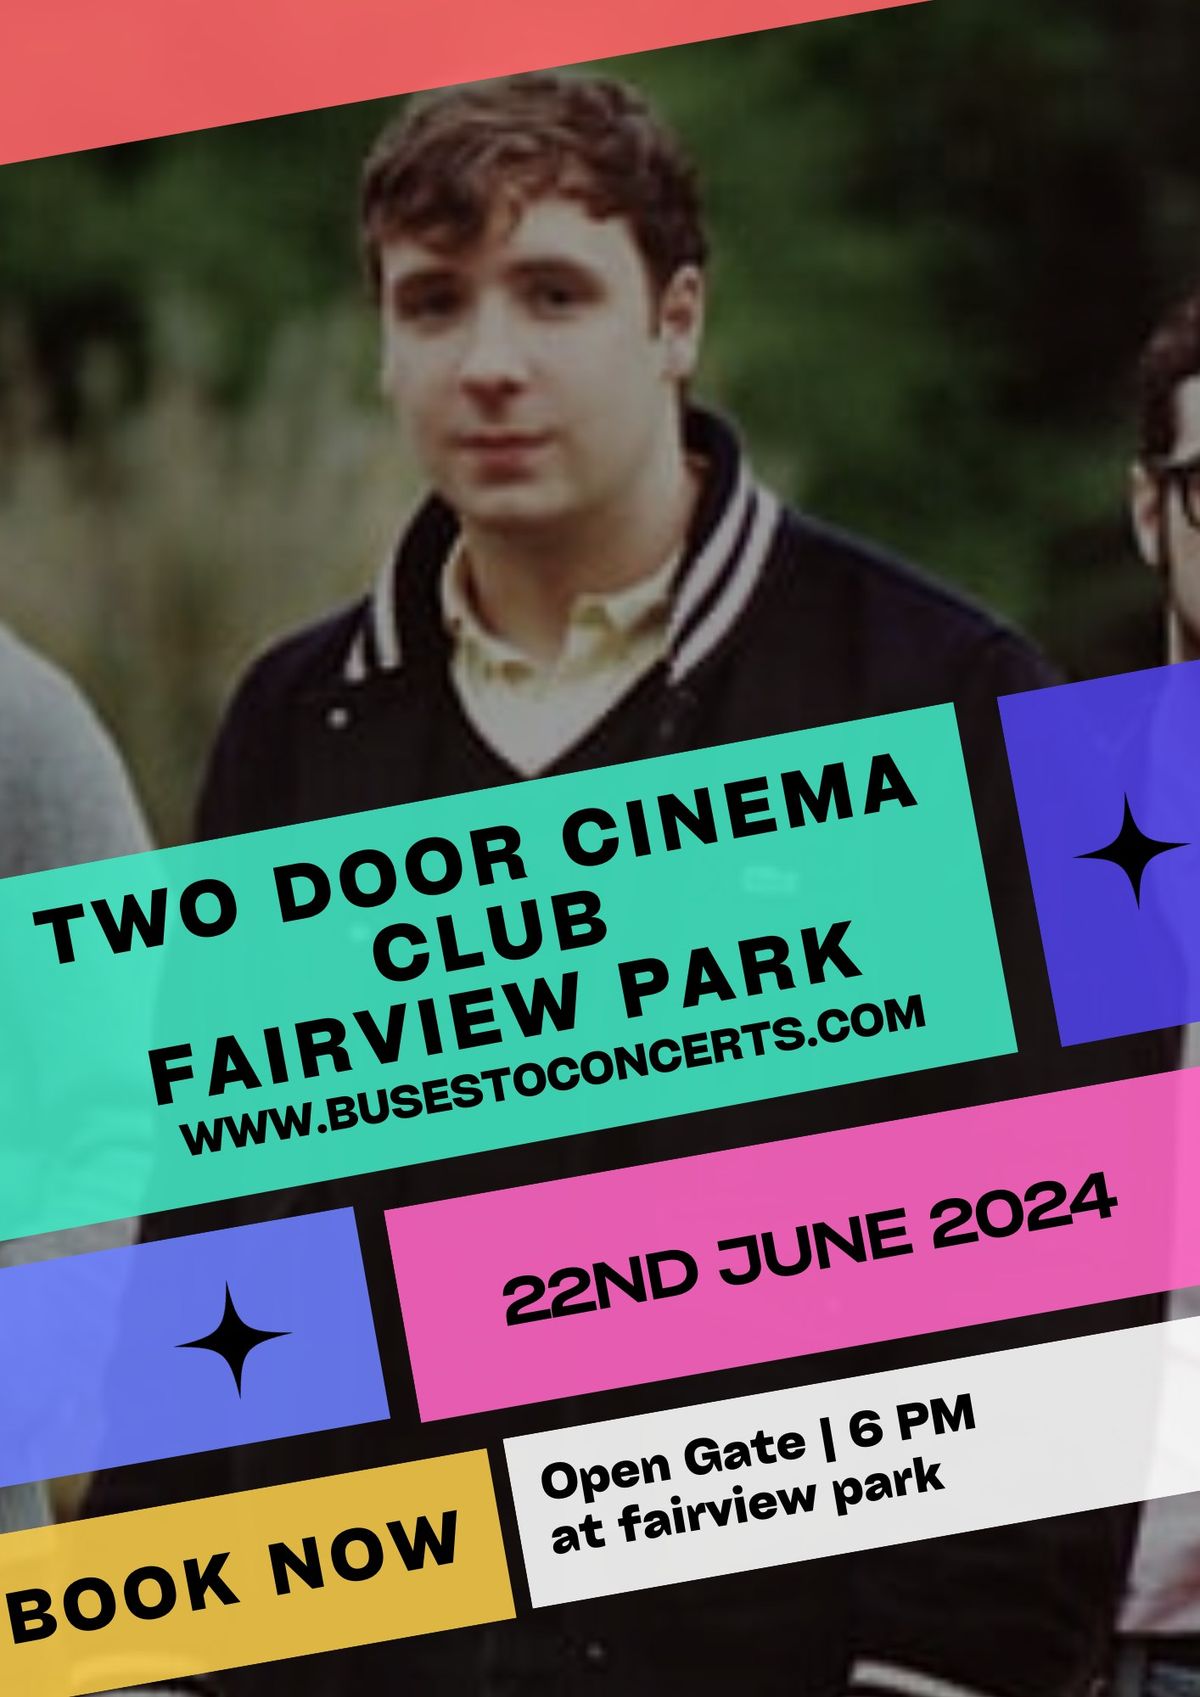 TWO DOOR CINEMA CLUB -FAIRVIEW PARK - 22ND JUNE 2024